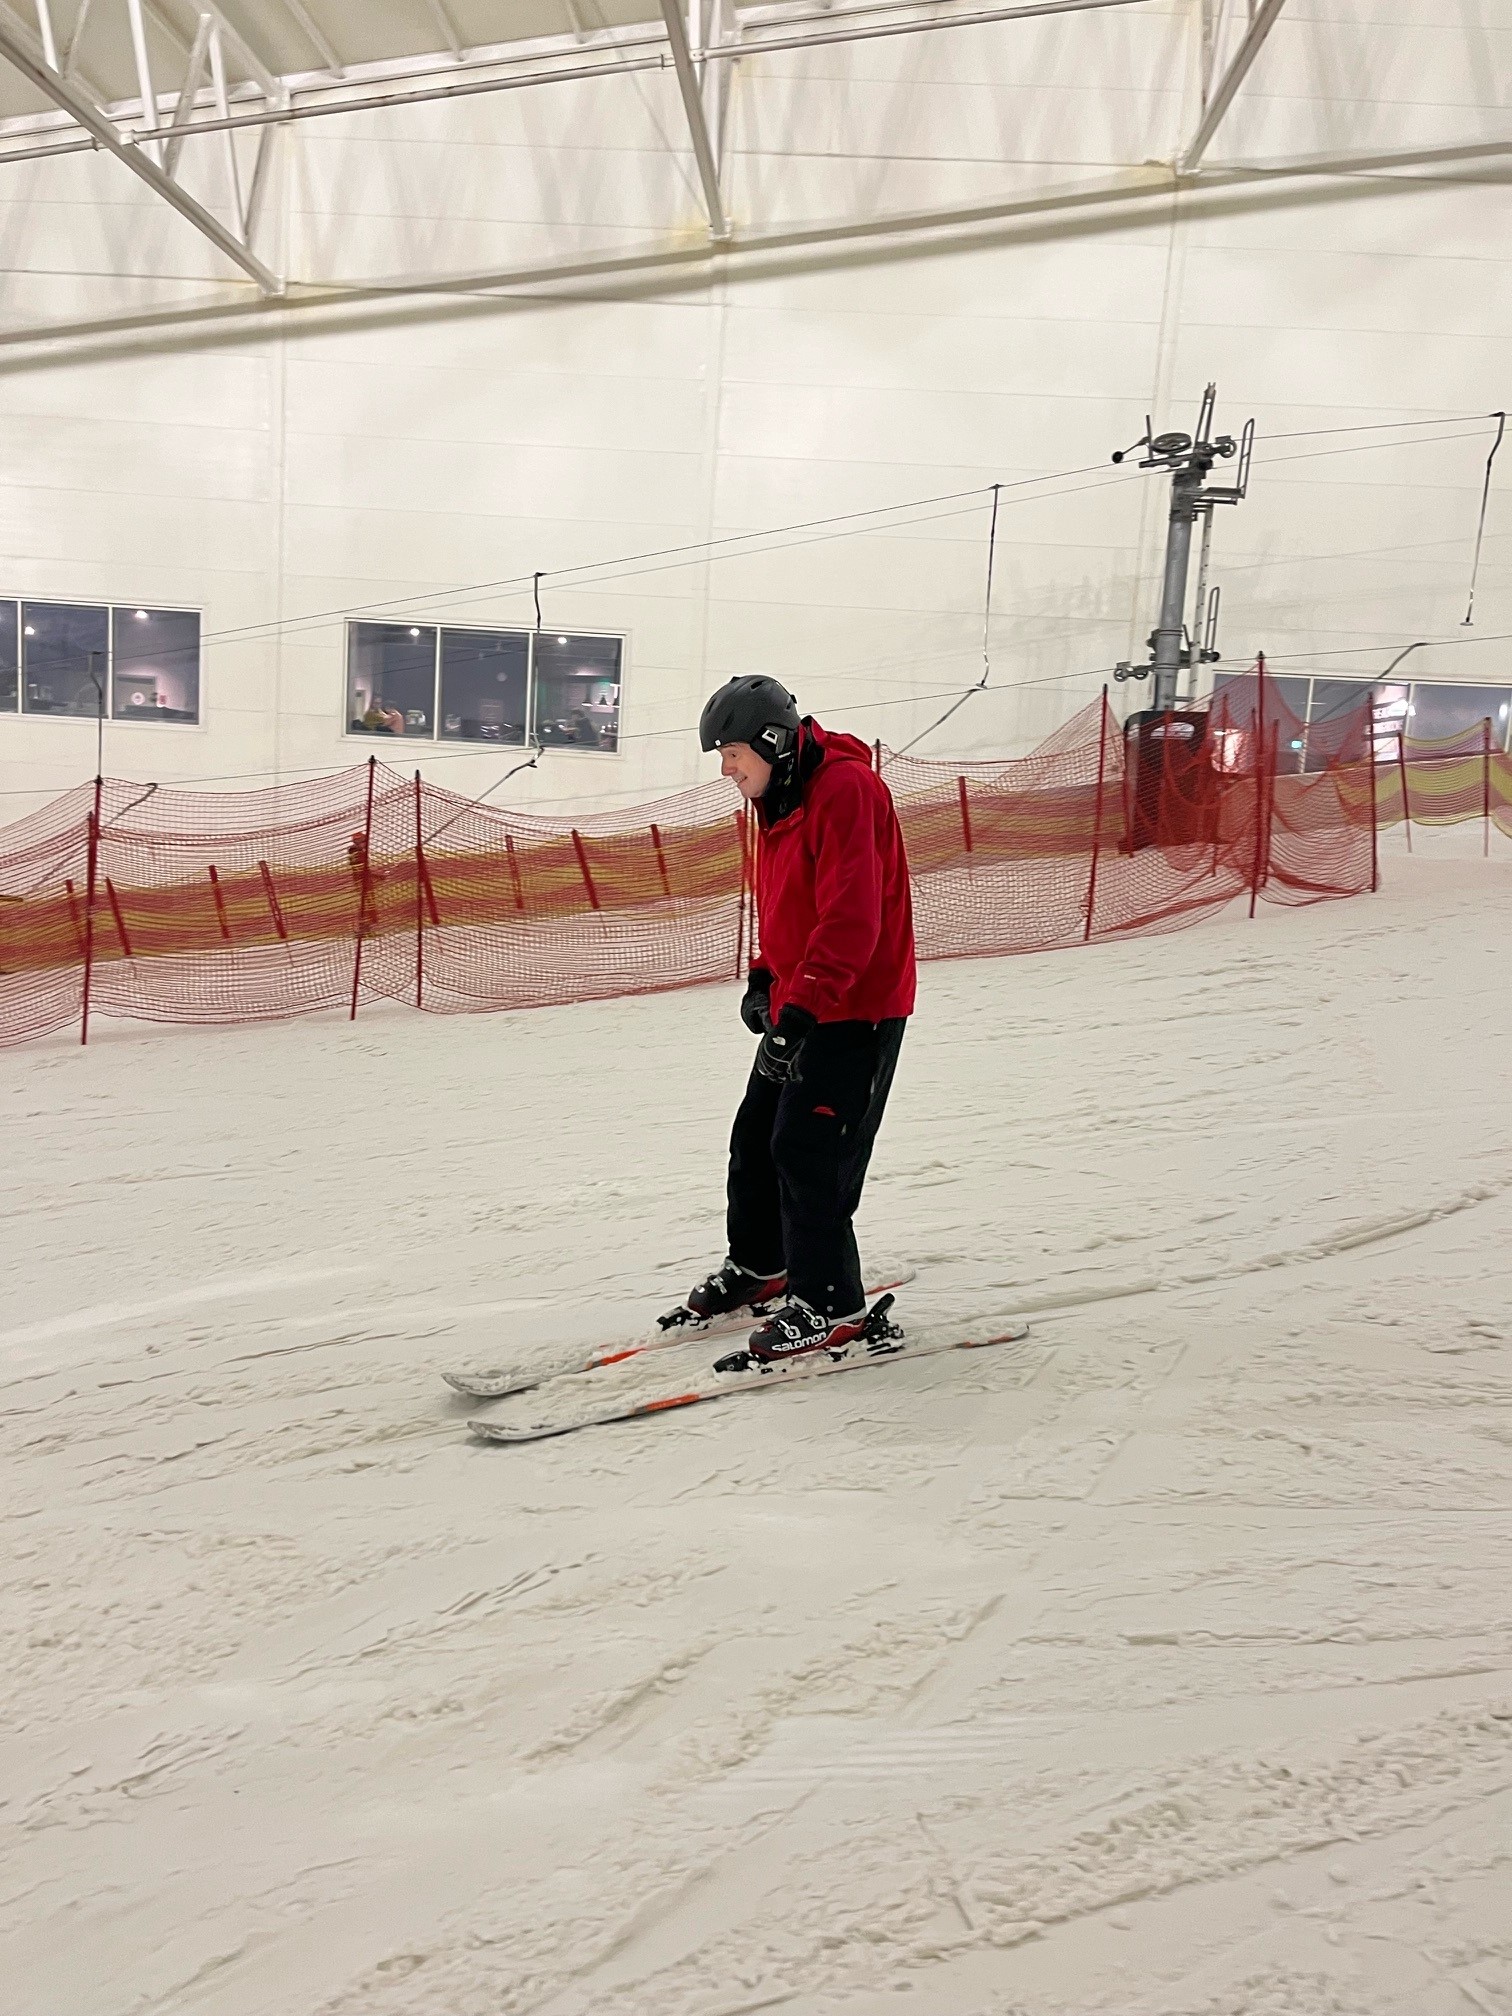 Kev, Skiing at Xsacpe, Hull.